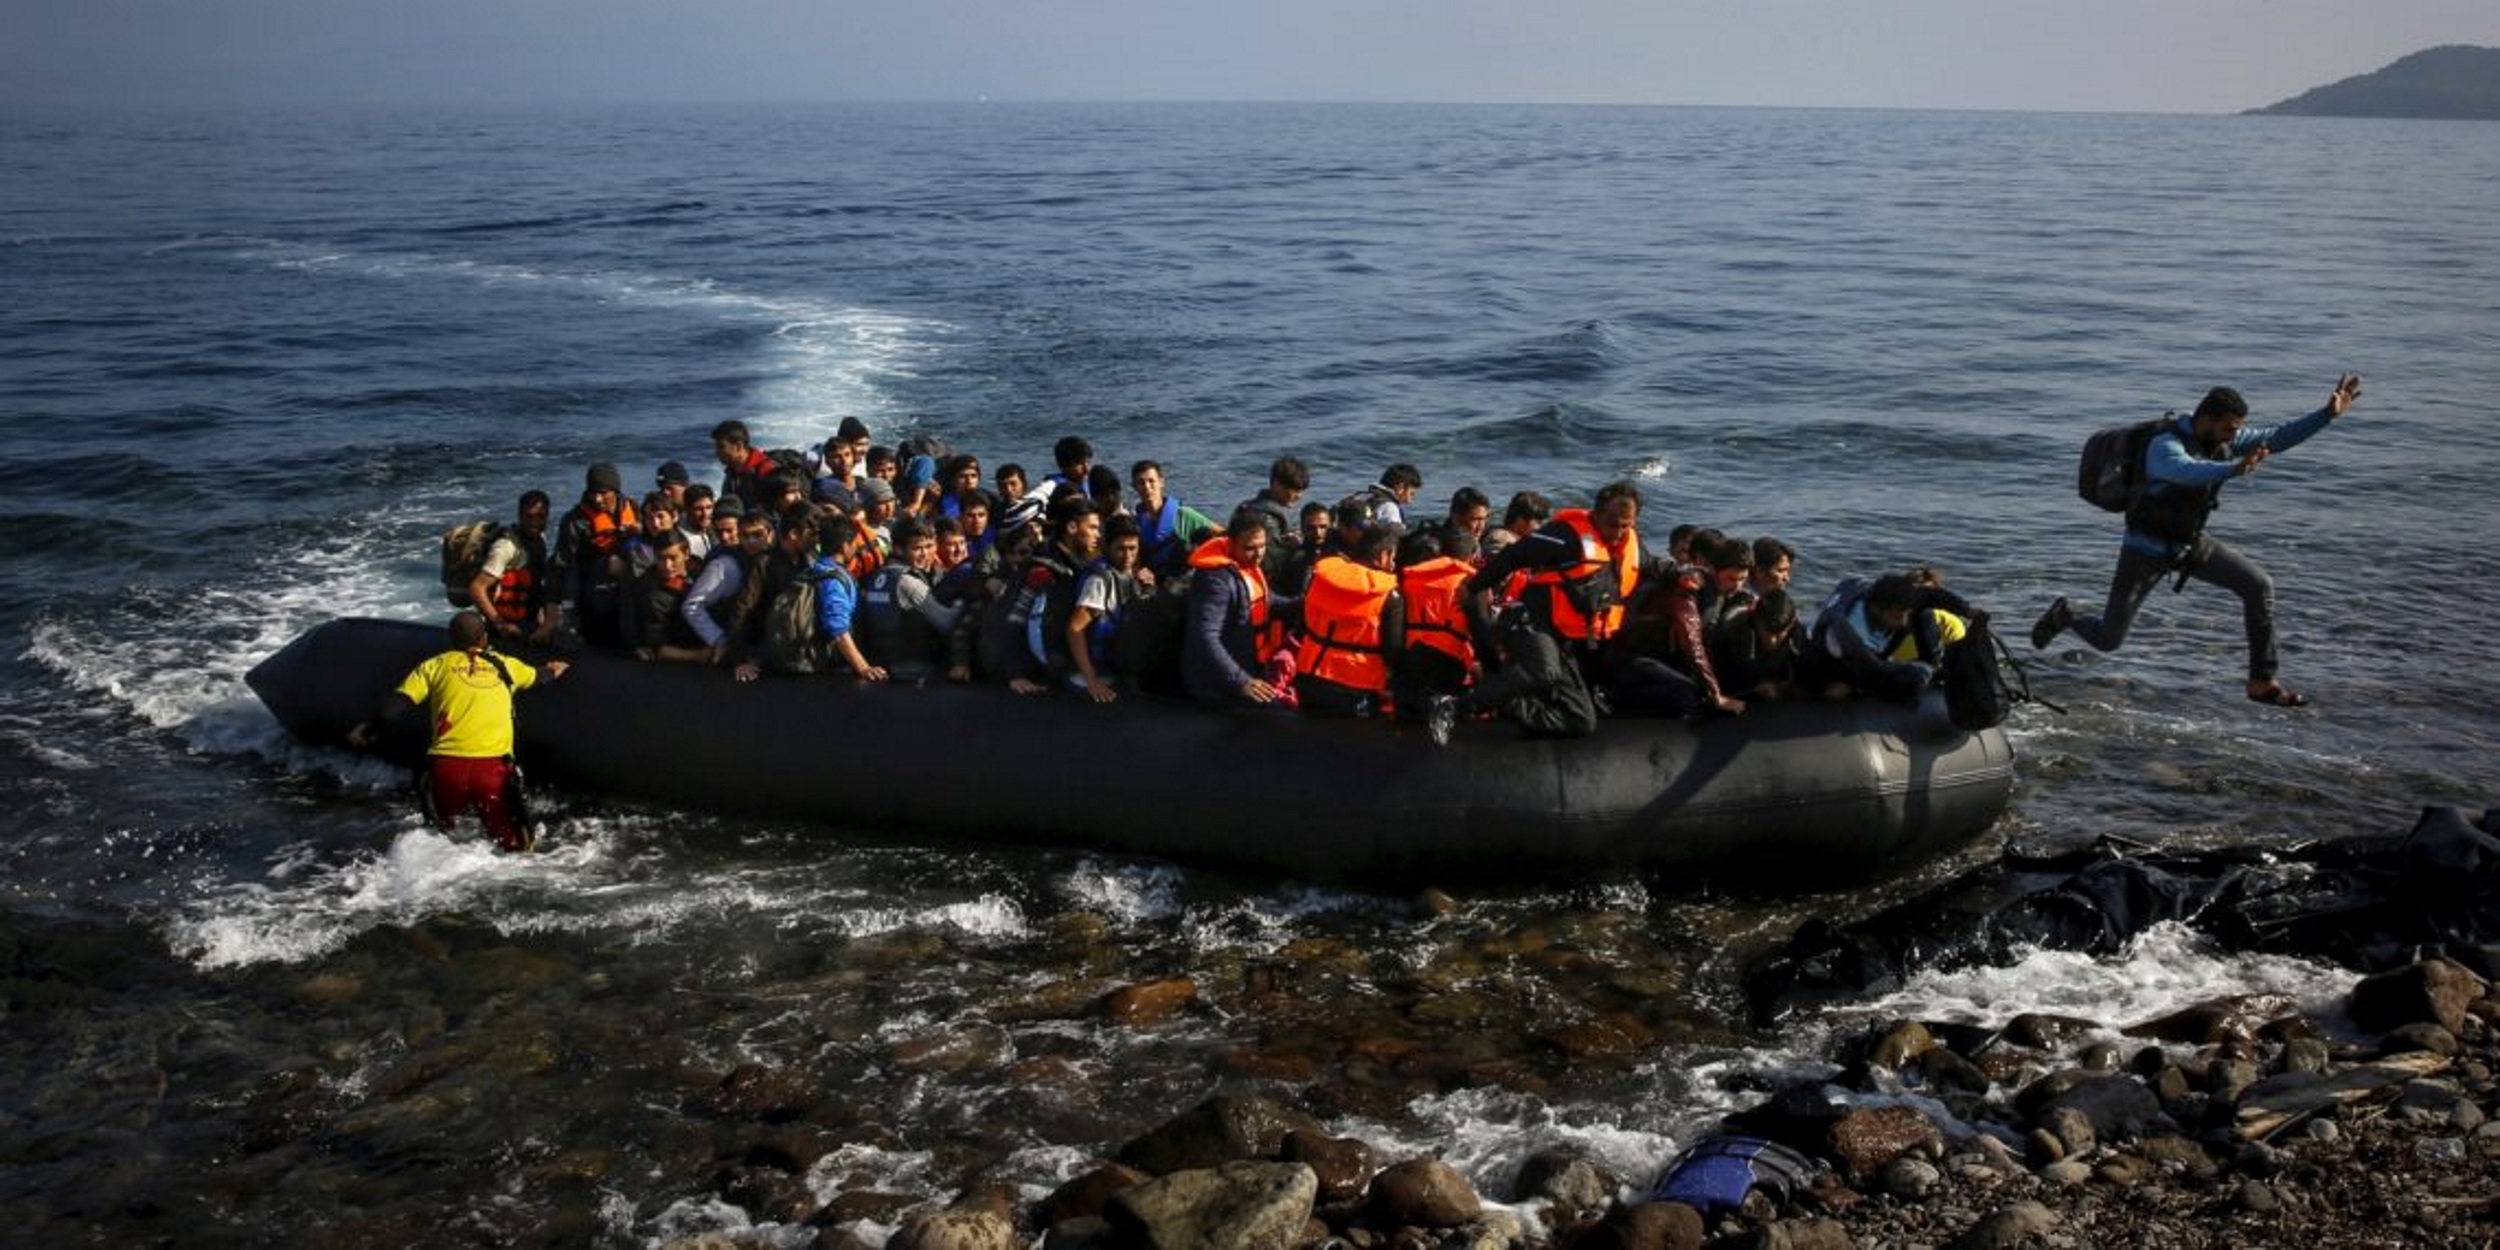 Ξεκάθαρος ο ΥΕΘΑ: Υπάρχει ανησυχία για το προσφυγικό αλλά δεν επιζητούμε τη “στρατικοποίηση”